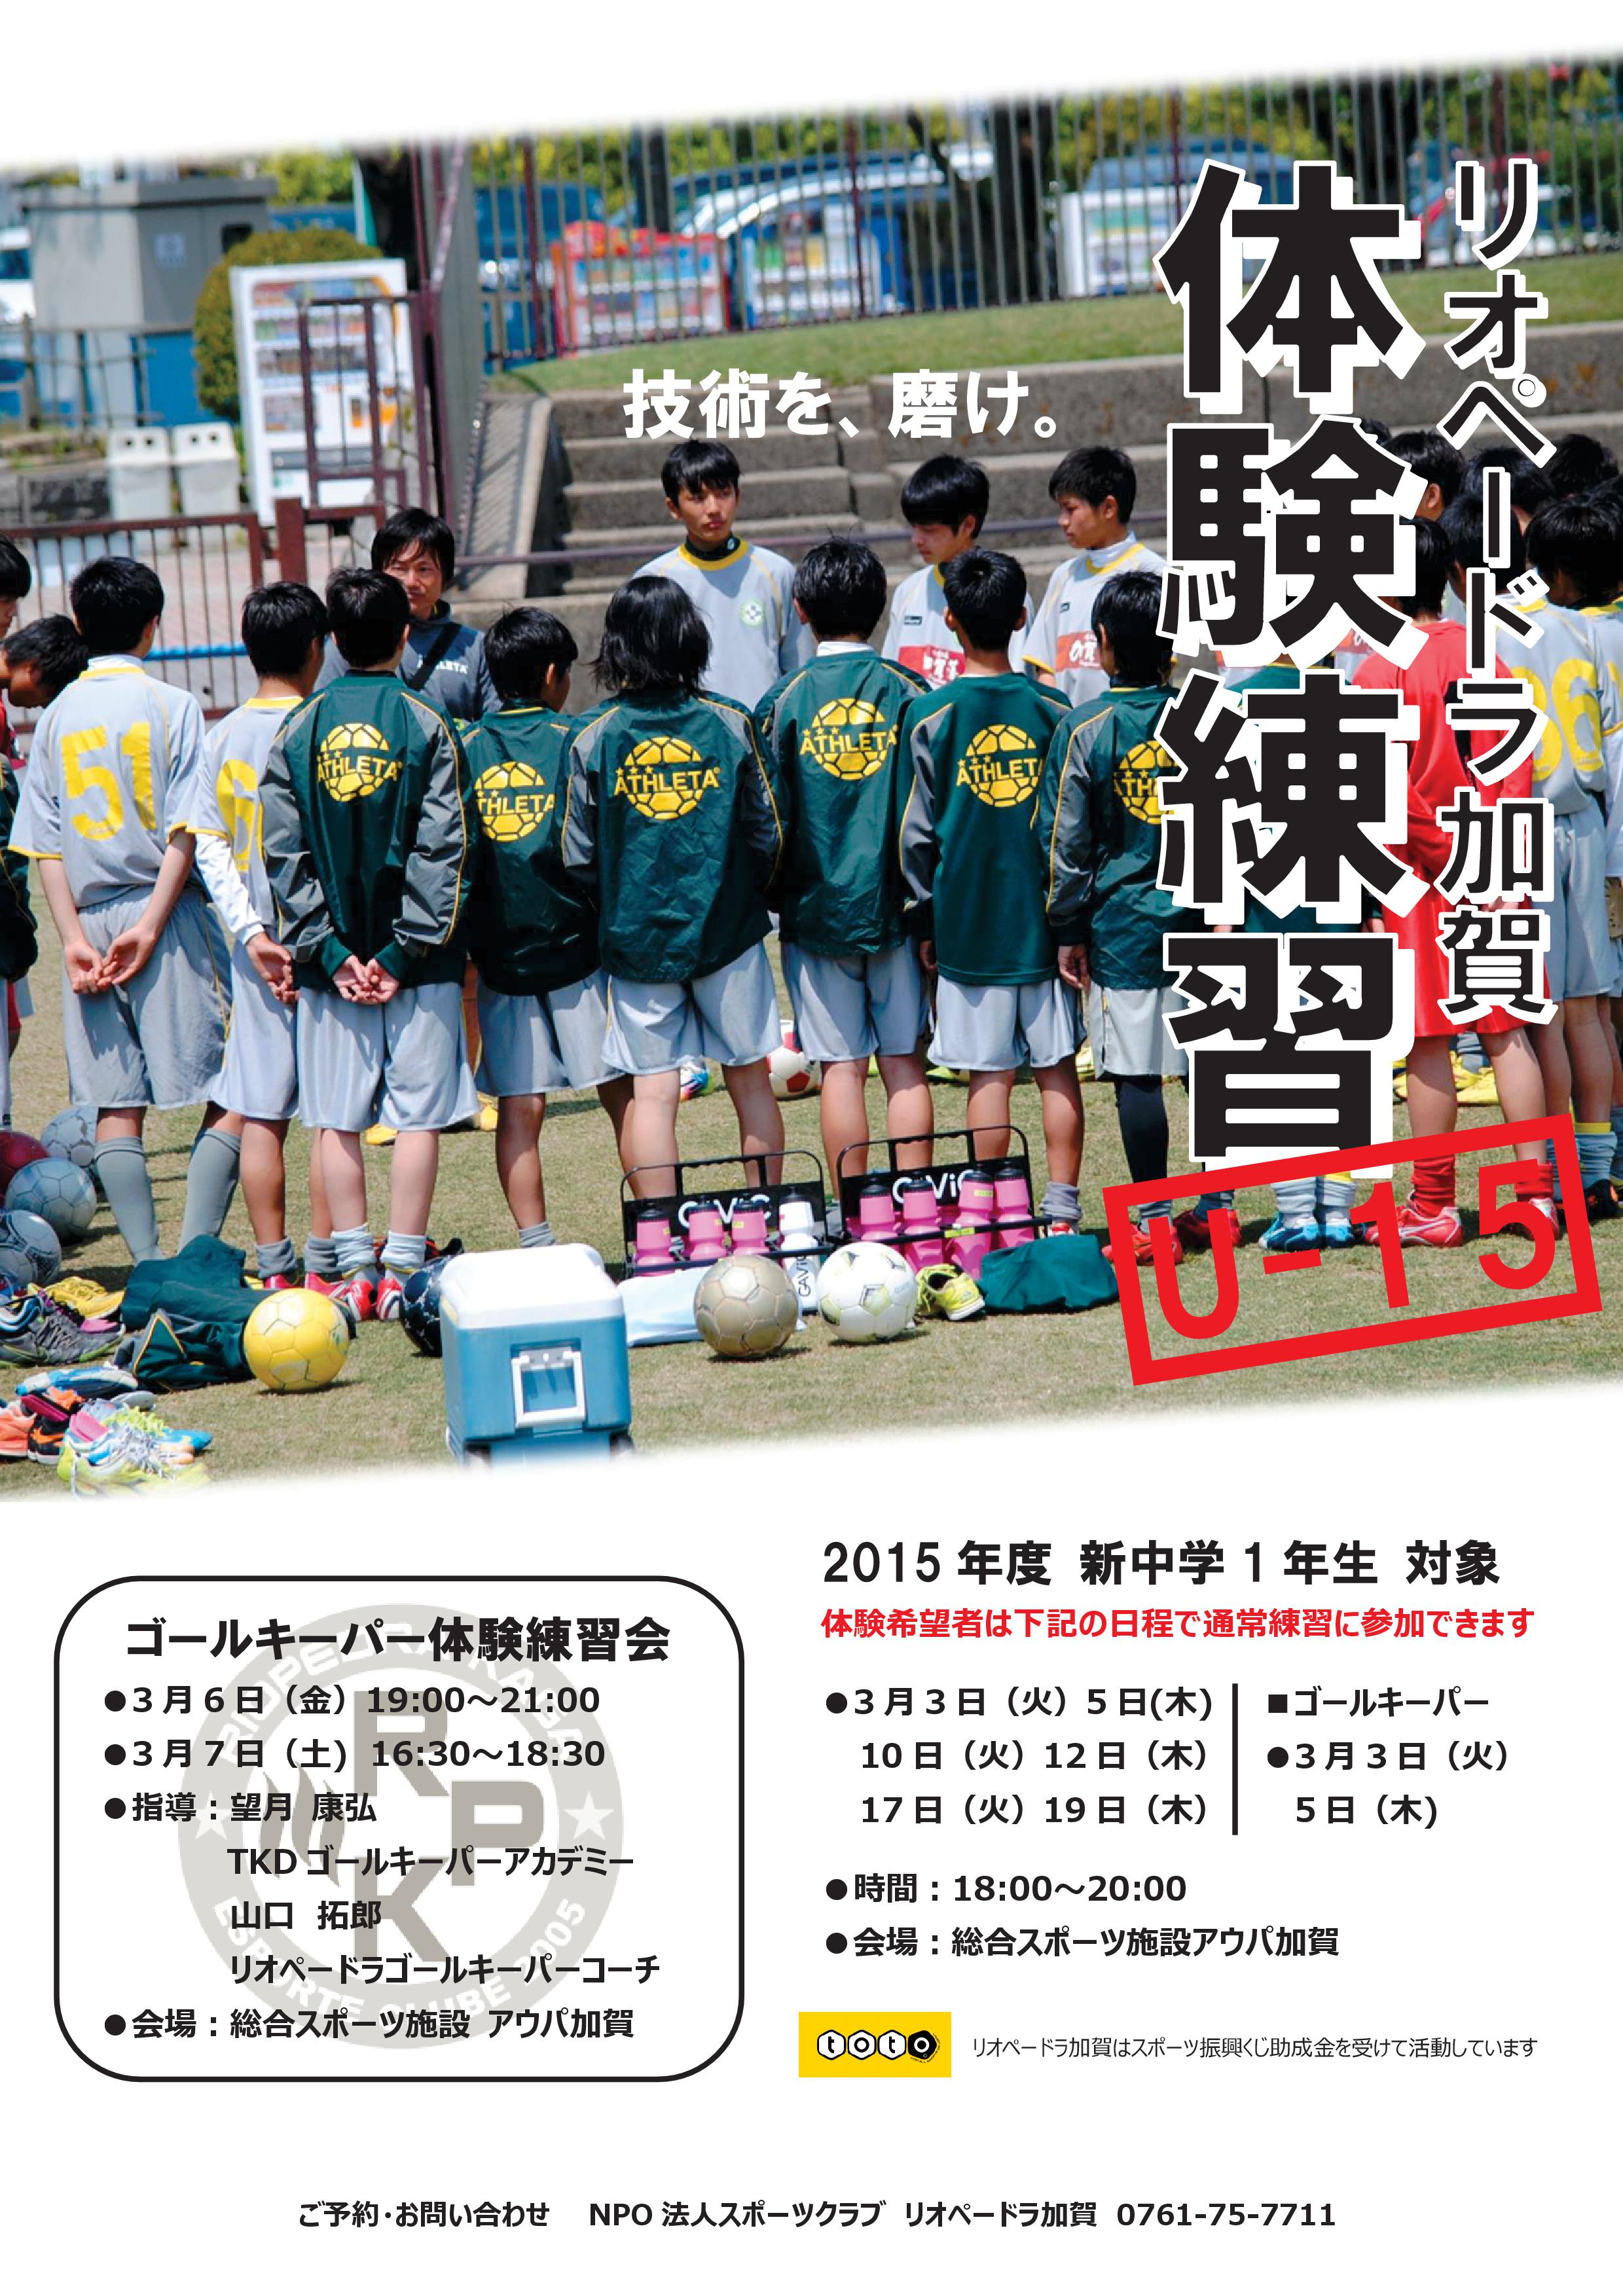 15年度新中学一年生対象 ジュニアユース U 15 3月の体験練習 石川県のサッカー 体育 体操 ならスポーツクラブリオペードラ加賀